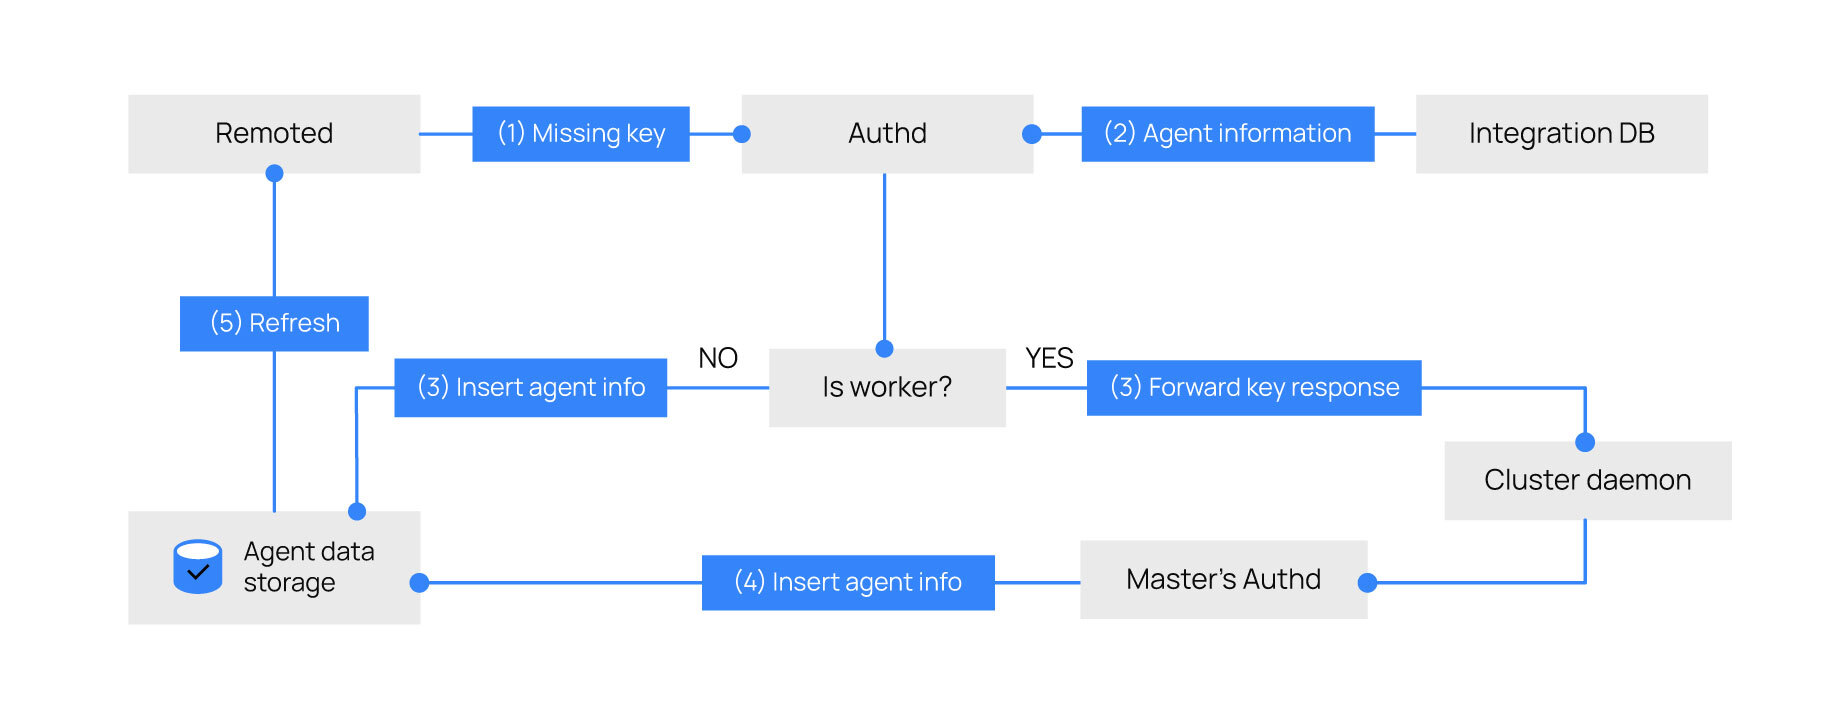 Agent key request flow diagram